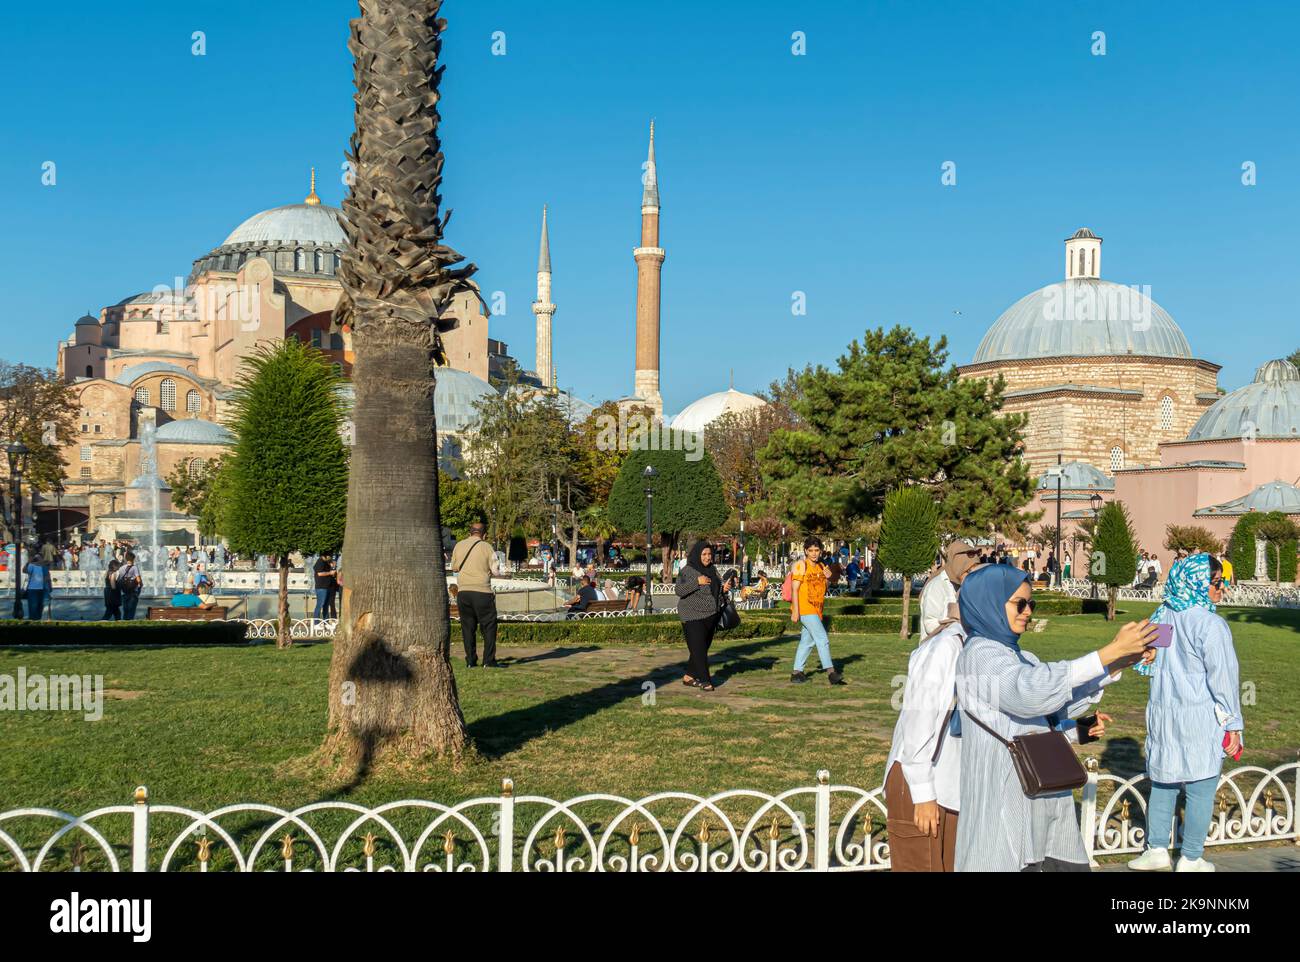 Donne turche che prendono selfie nel Sultano Ahmet Parki con vista dei punti di riferimento. Turchia donna fare selfie. Fatih, Istanbul, Turchia Foto Stock